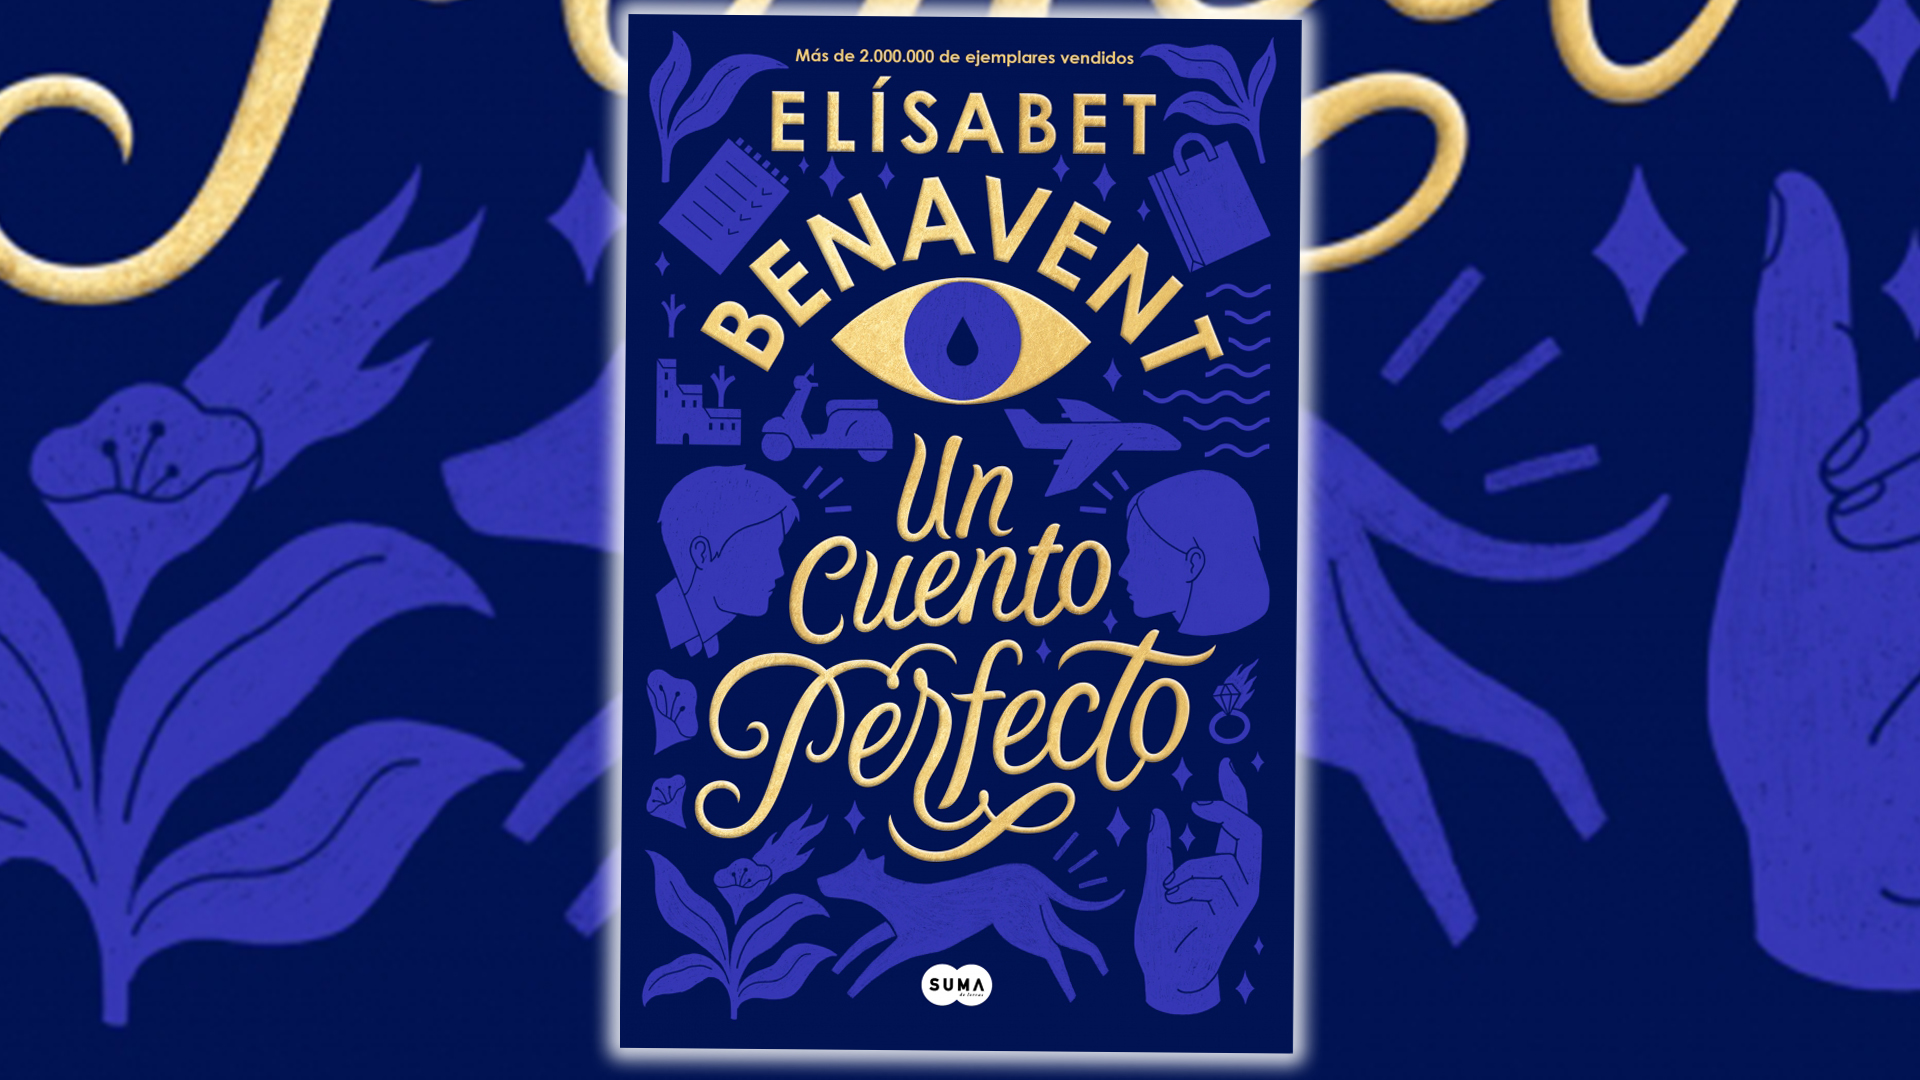 Sinopsis y opinión de Un cuento Perfecto de Elísabet Benavent